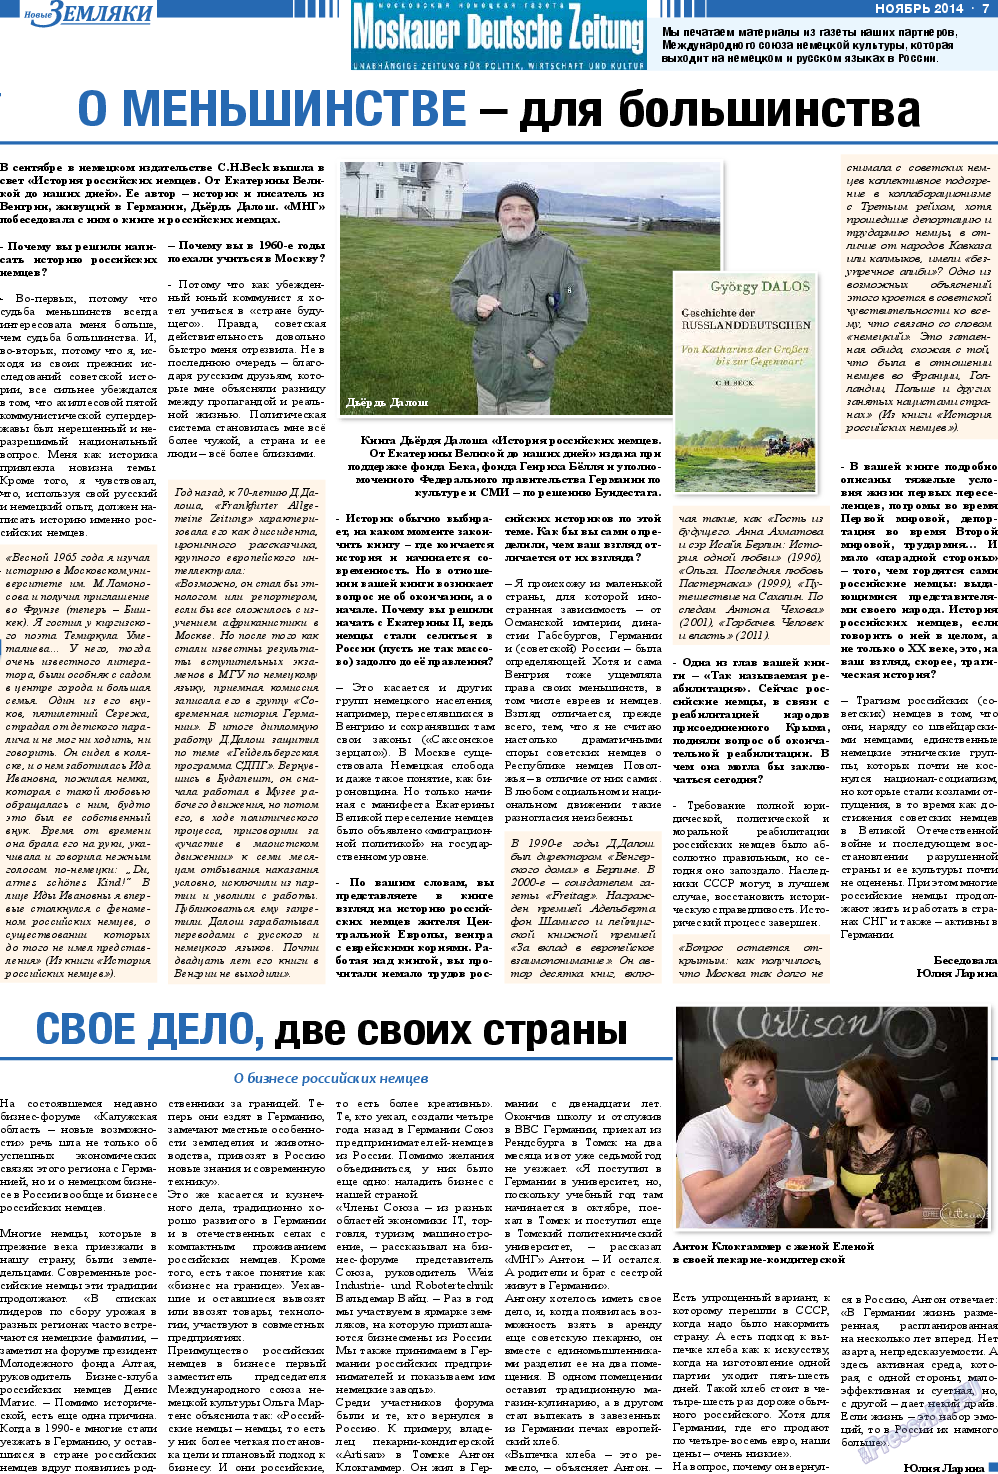 Новые Земляки (газета). 2014 год, номер 11, стр. 7